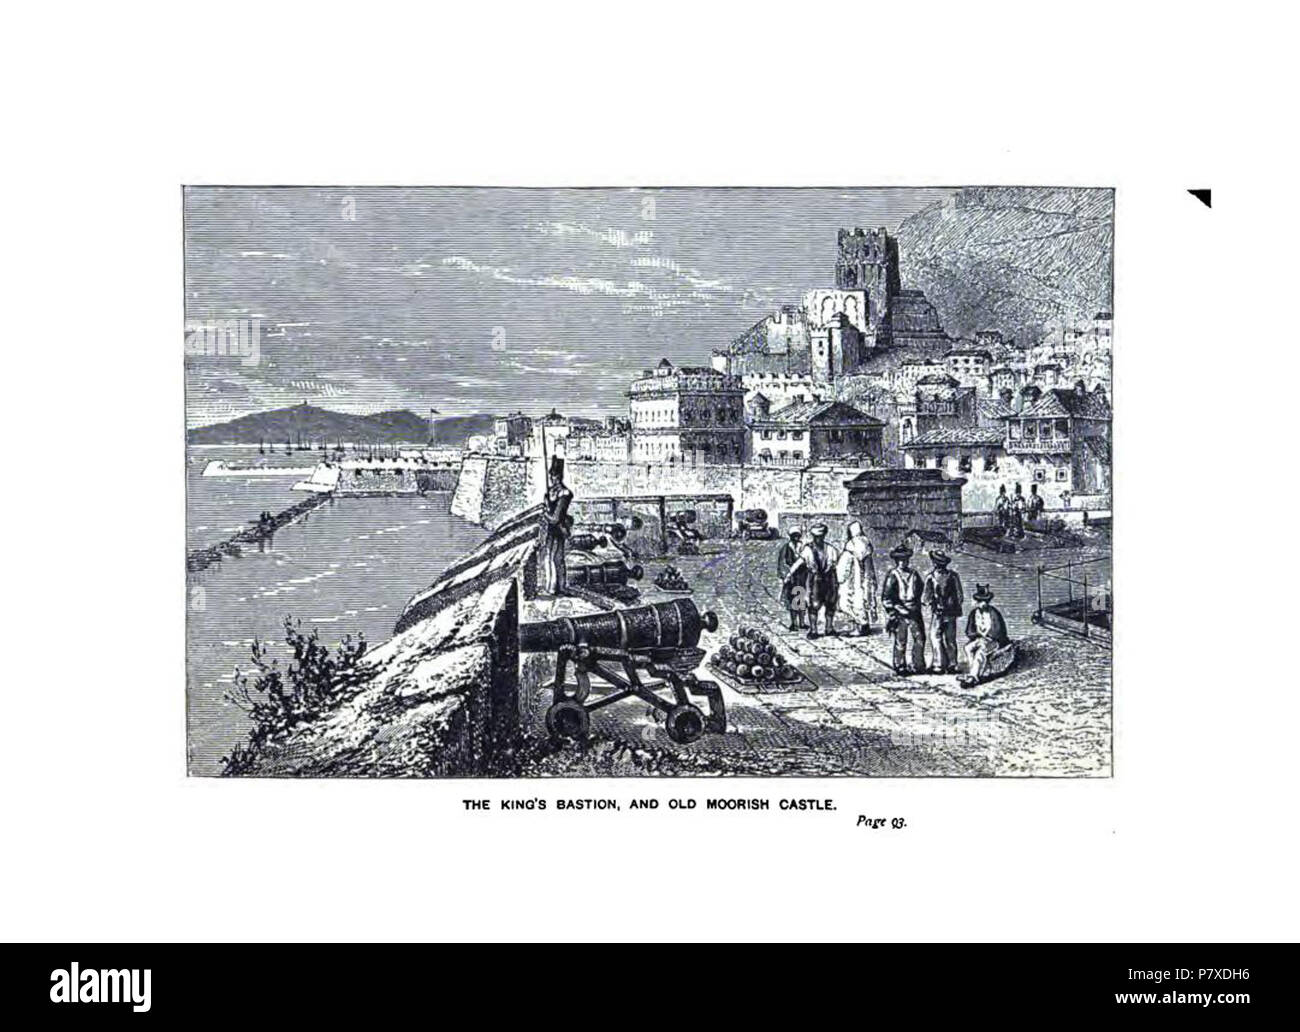 Englisch: Süden Bastion und die maurische Burg - Gravuren von ieges von Gibraltar' 1879. 26 November 2012, 16:07:42 351 South Bastion und die maurische Burg Stockfoto